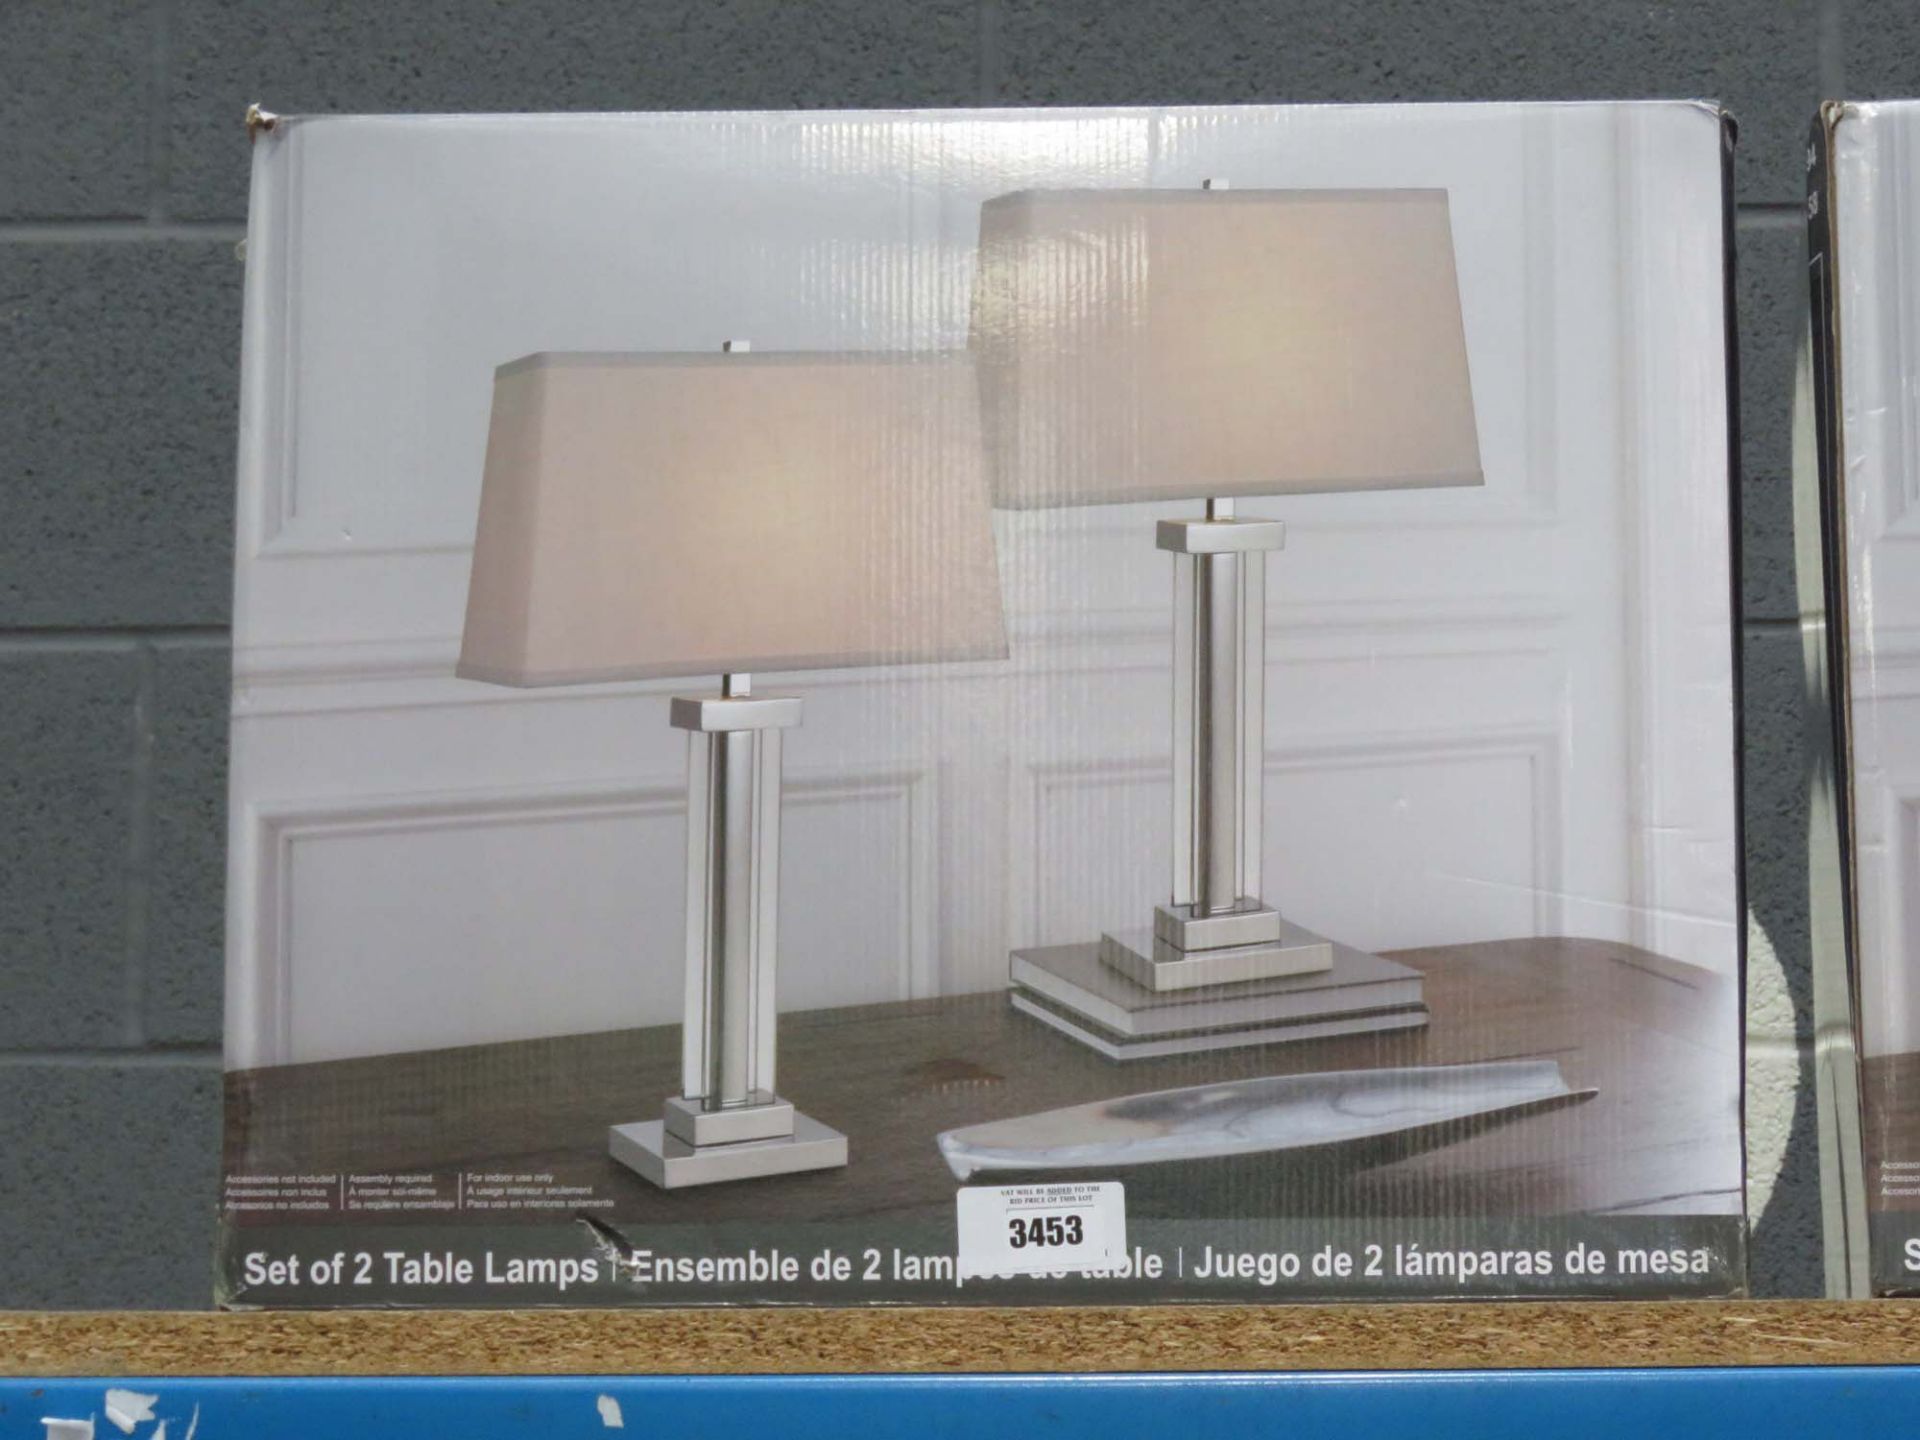 Pair of bridge design table lamps in box